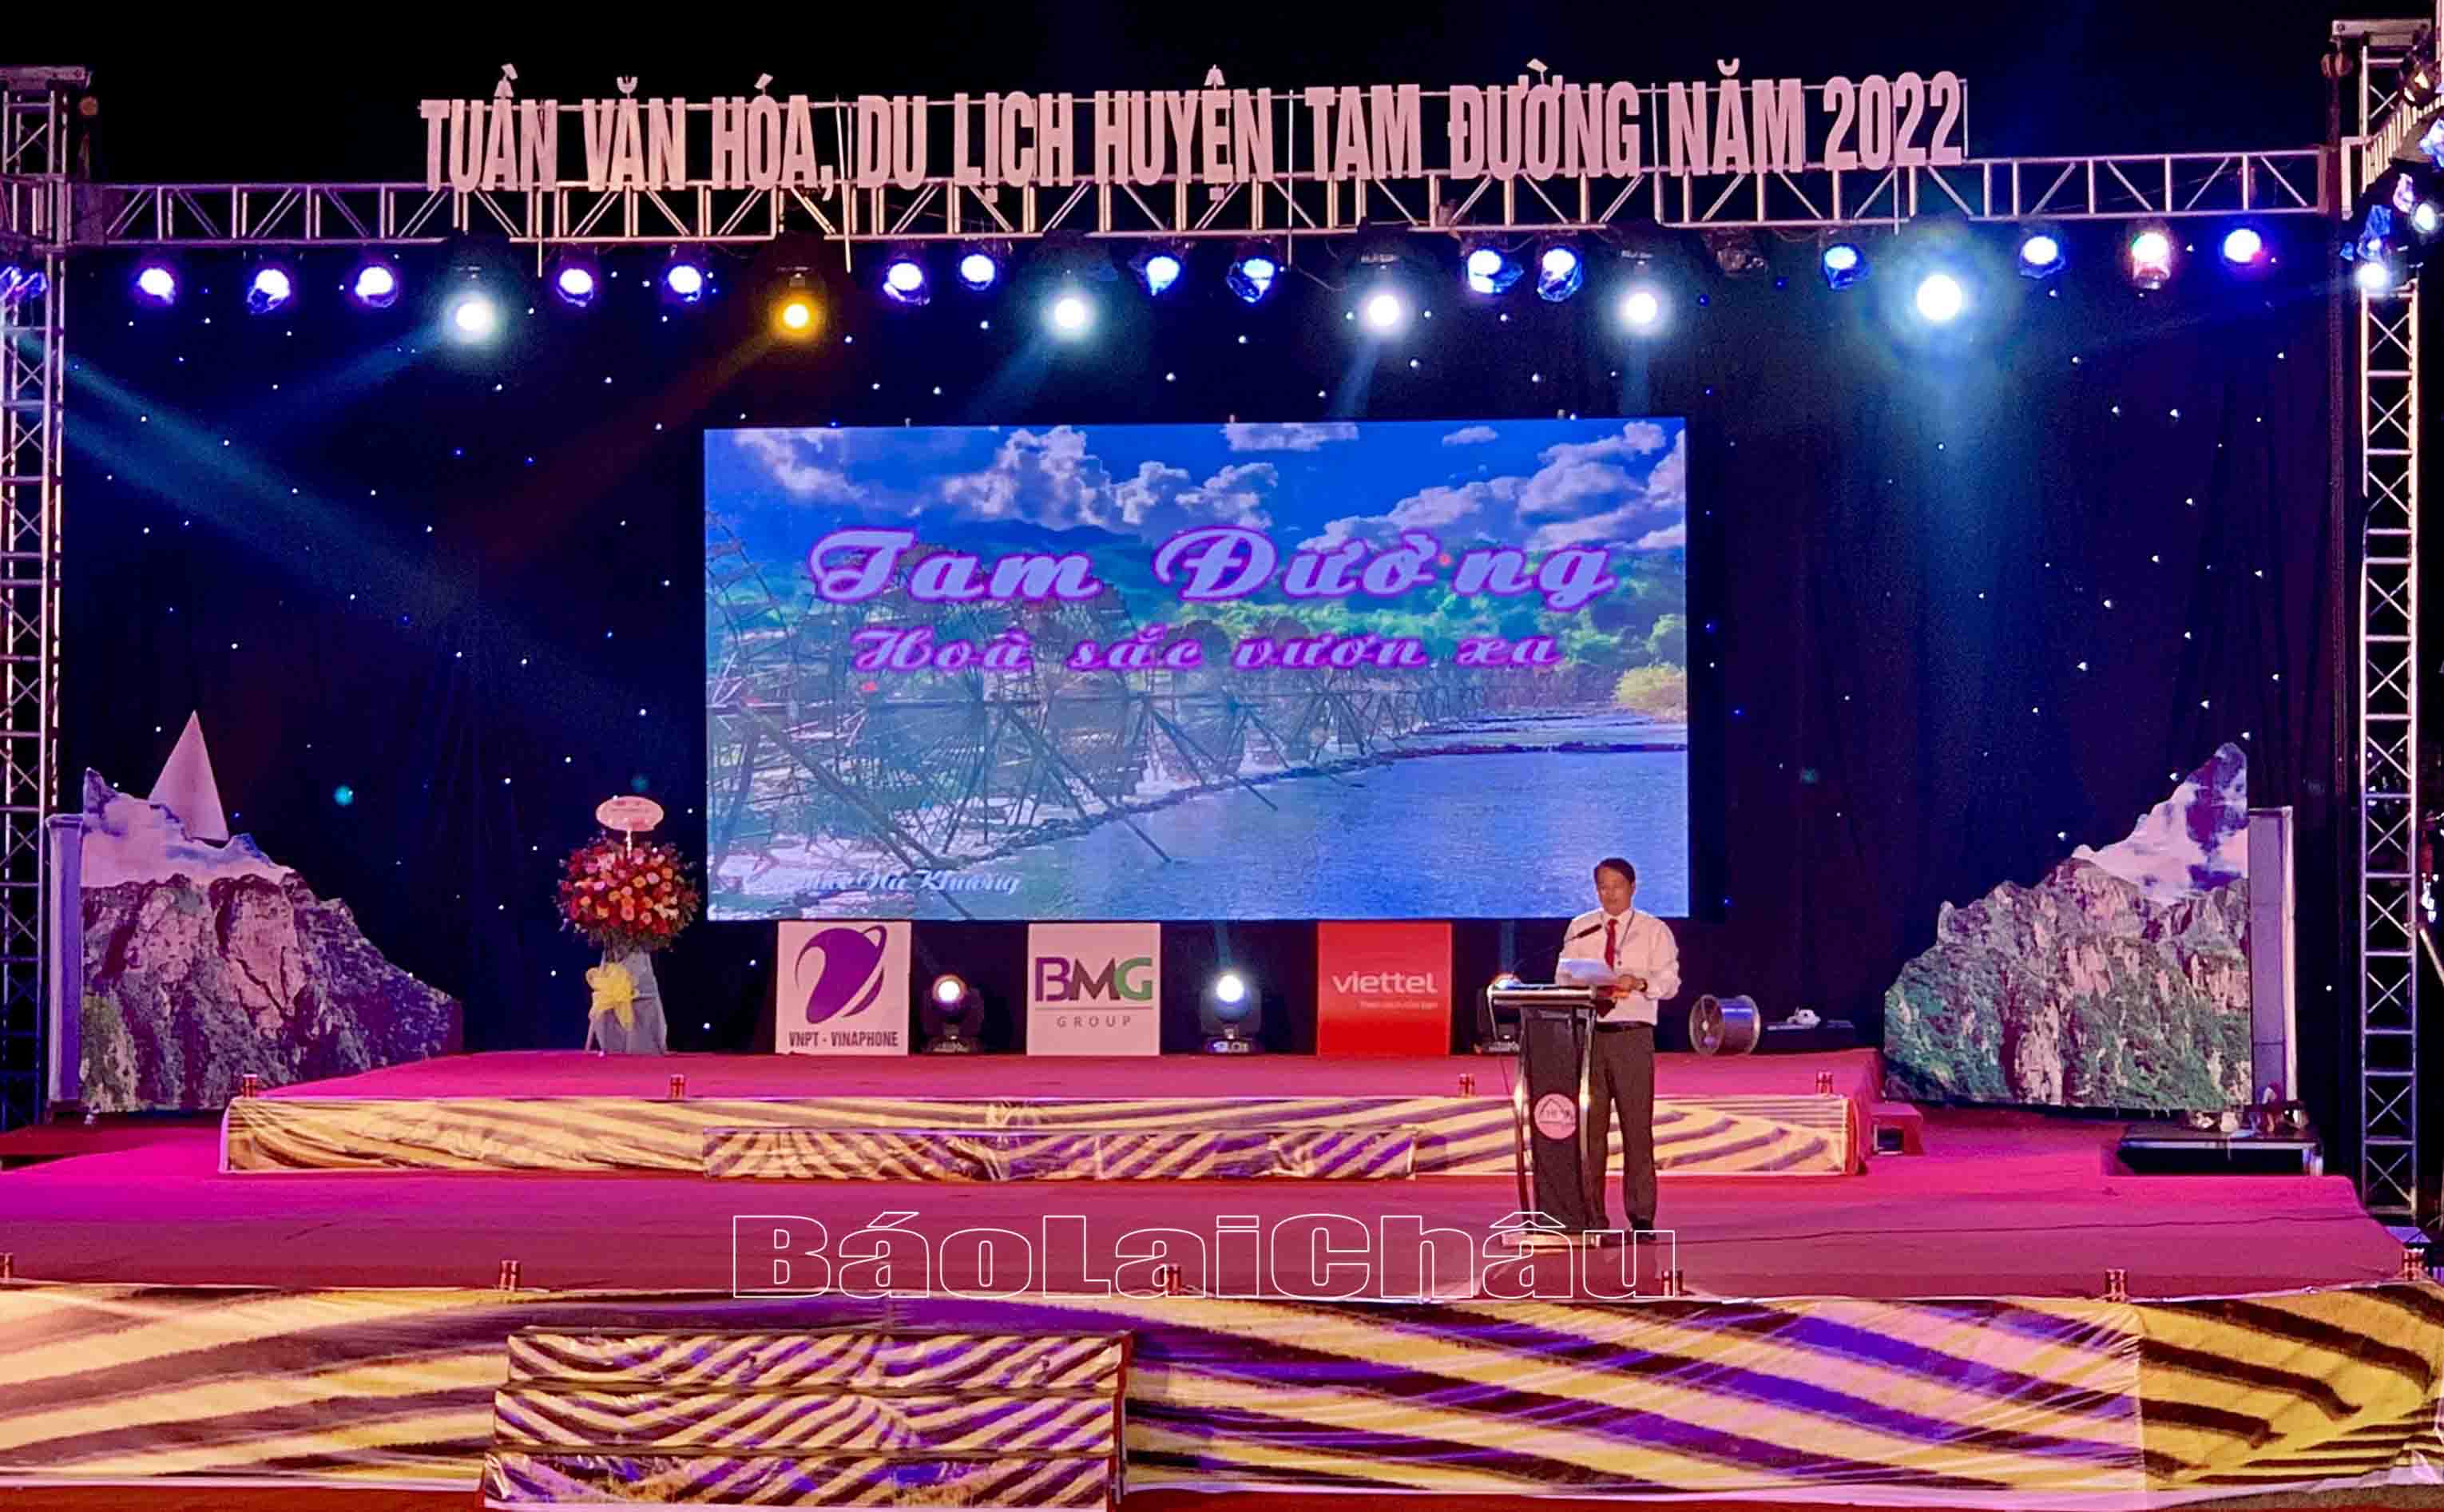 Đồng chí Vũ Xuân Thịnh - Phó Chủ tịch UBND huyện Tam Đường, Trưởng Ban chỉ đạo Tuần Văn hoá, Du lịch huyện Tam Đường năm 2022 phát biểu tại lễ khai mạc.